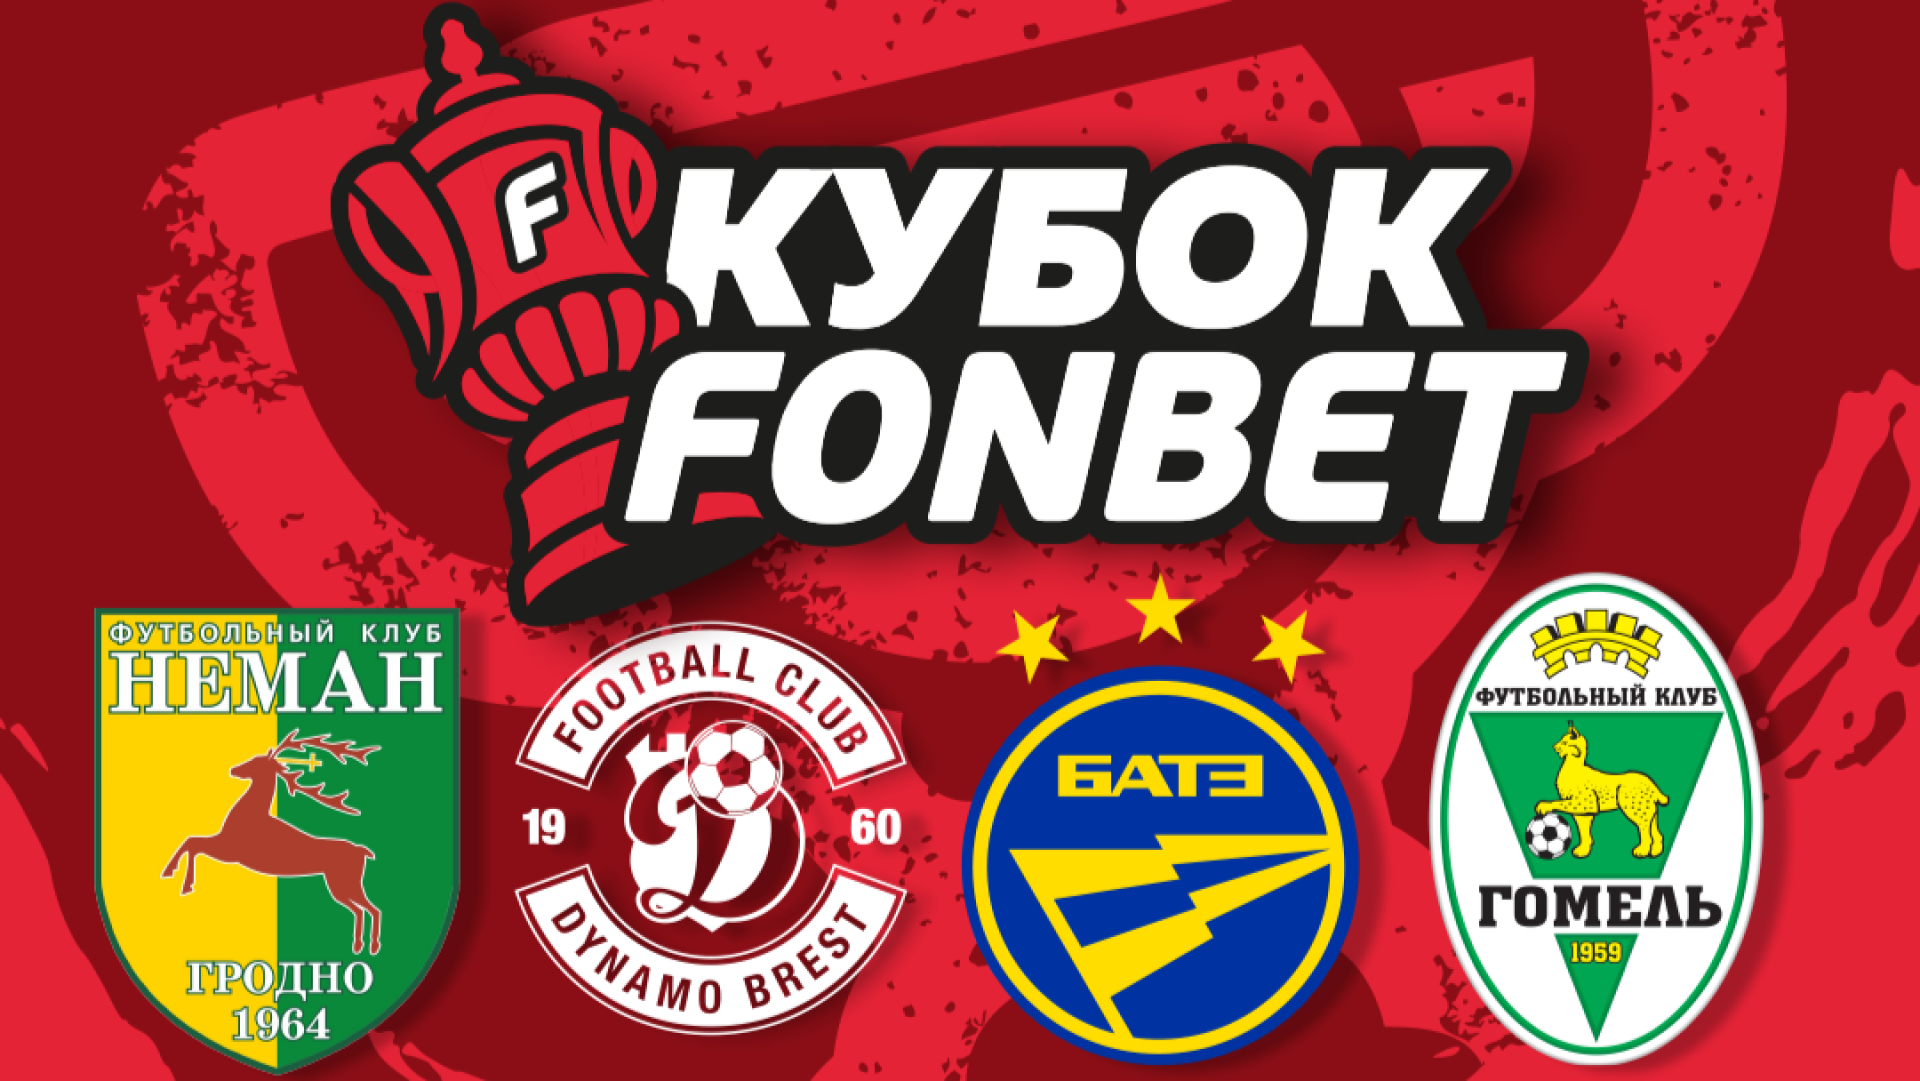 Кубок FONBET – «Динамо-Брест», БАТЭ, «Неман» и «Гомель» сразятся за трофей!